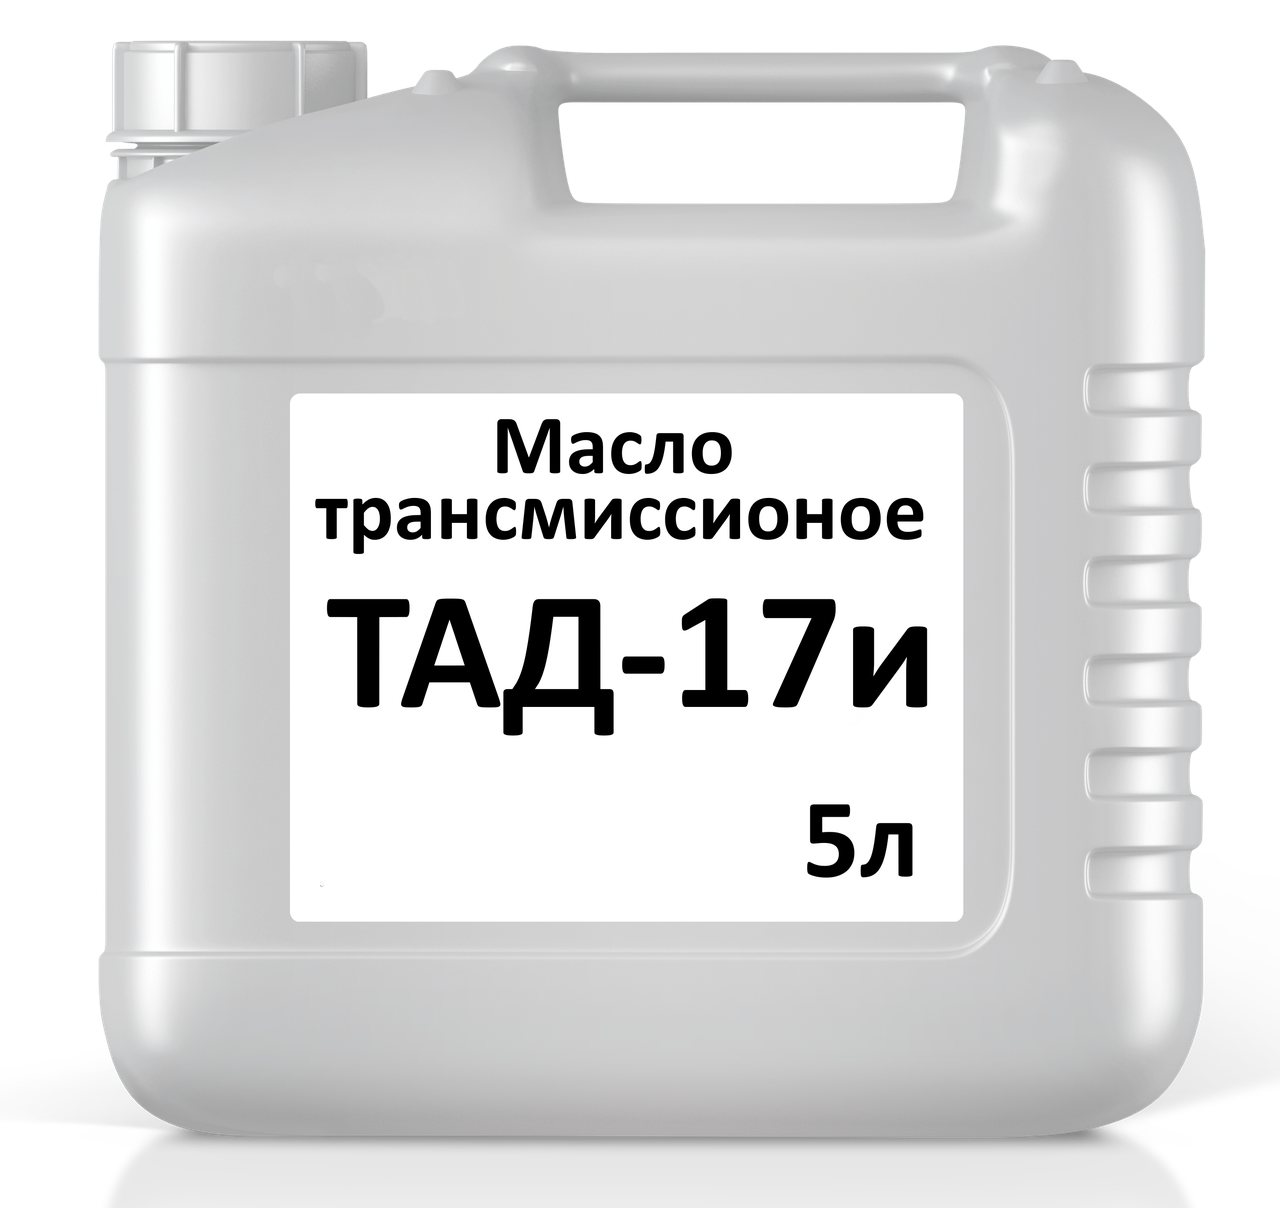 Масло трансмиссионное ТАД-17и кан. 5л